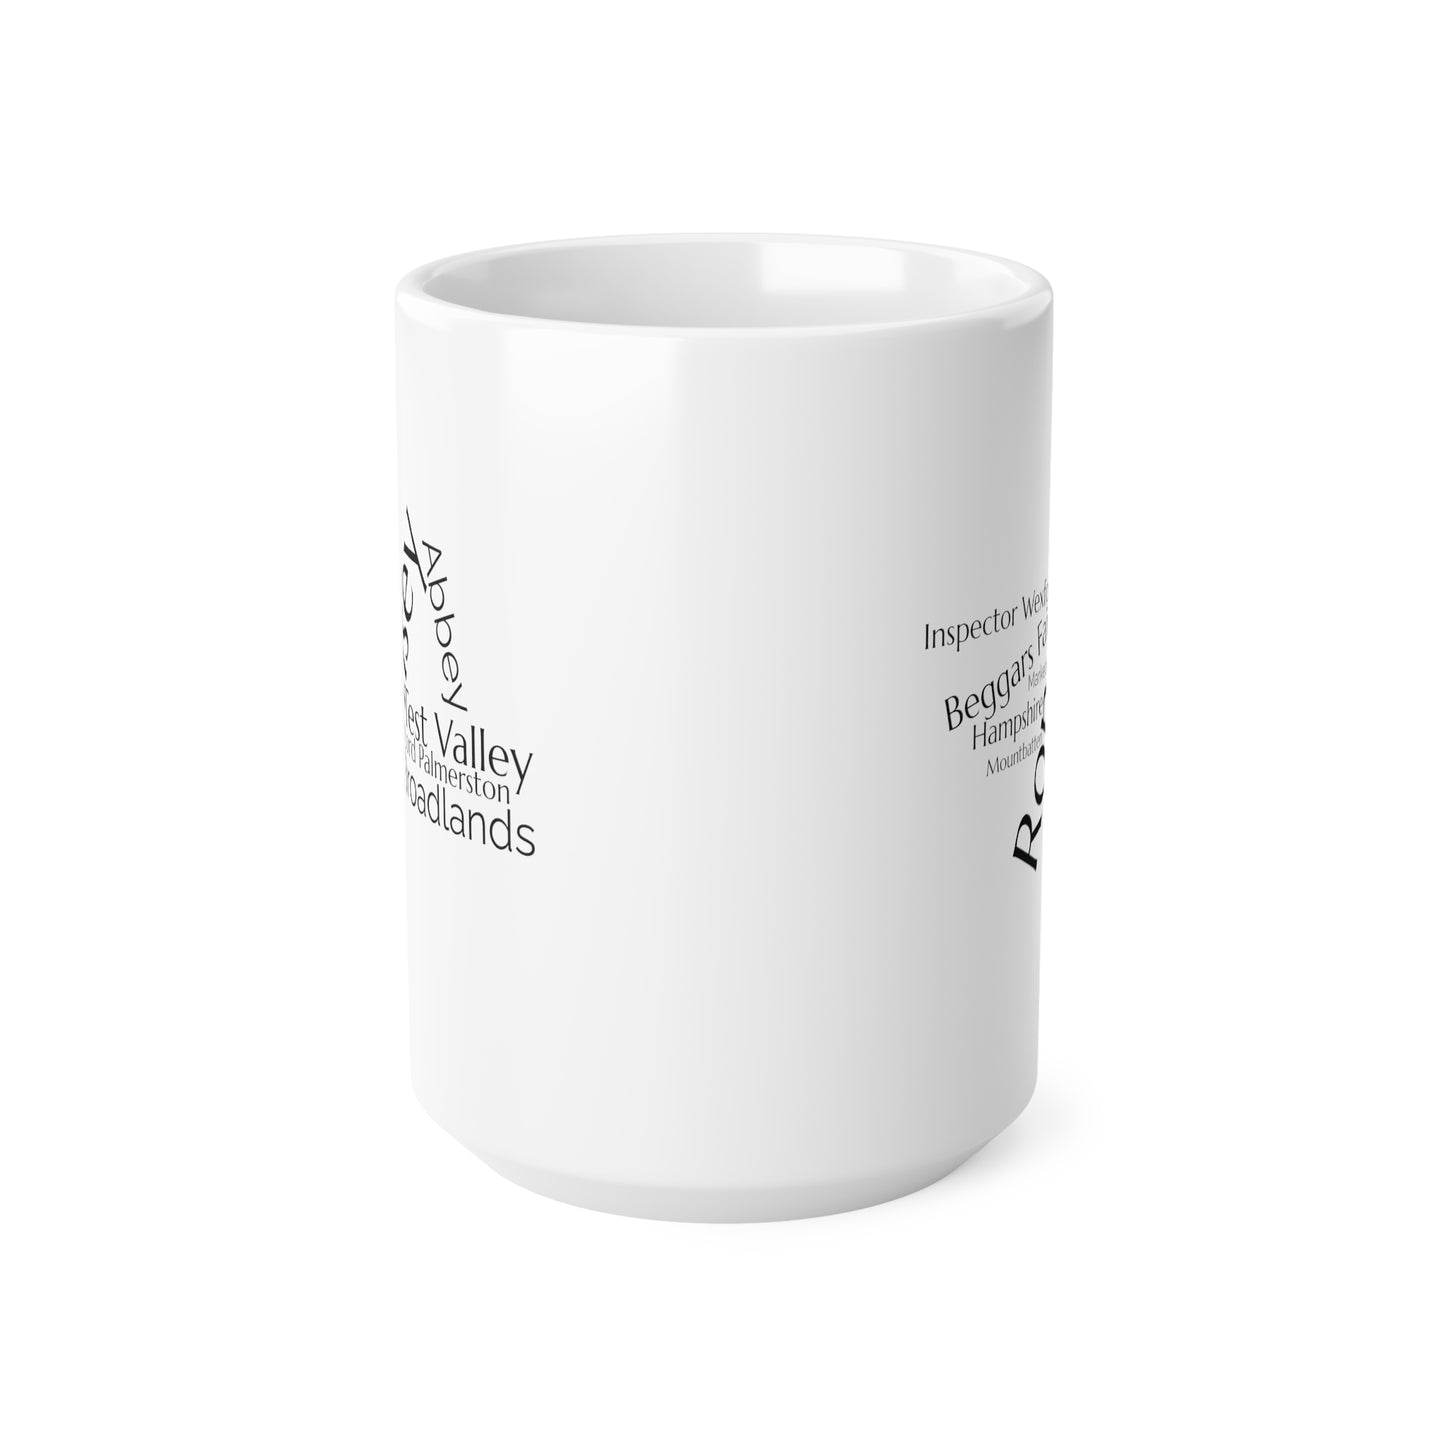 Romsey word mug, local mug, geography mug, gift, mug, coffee cup, word mug, wordcloud mug, christmas gift, birthday gift